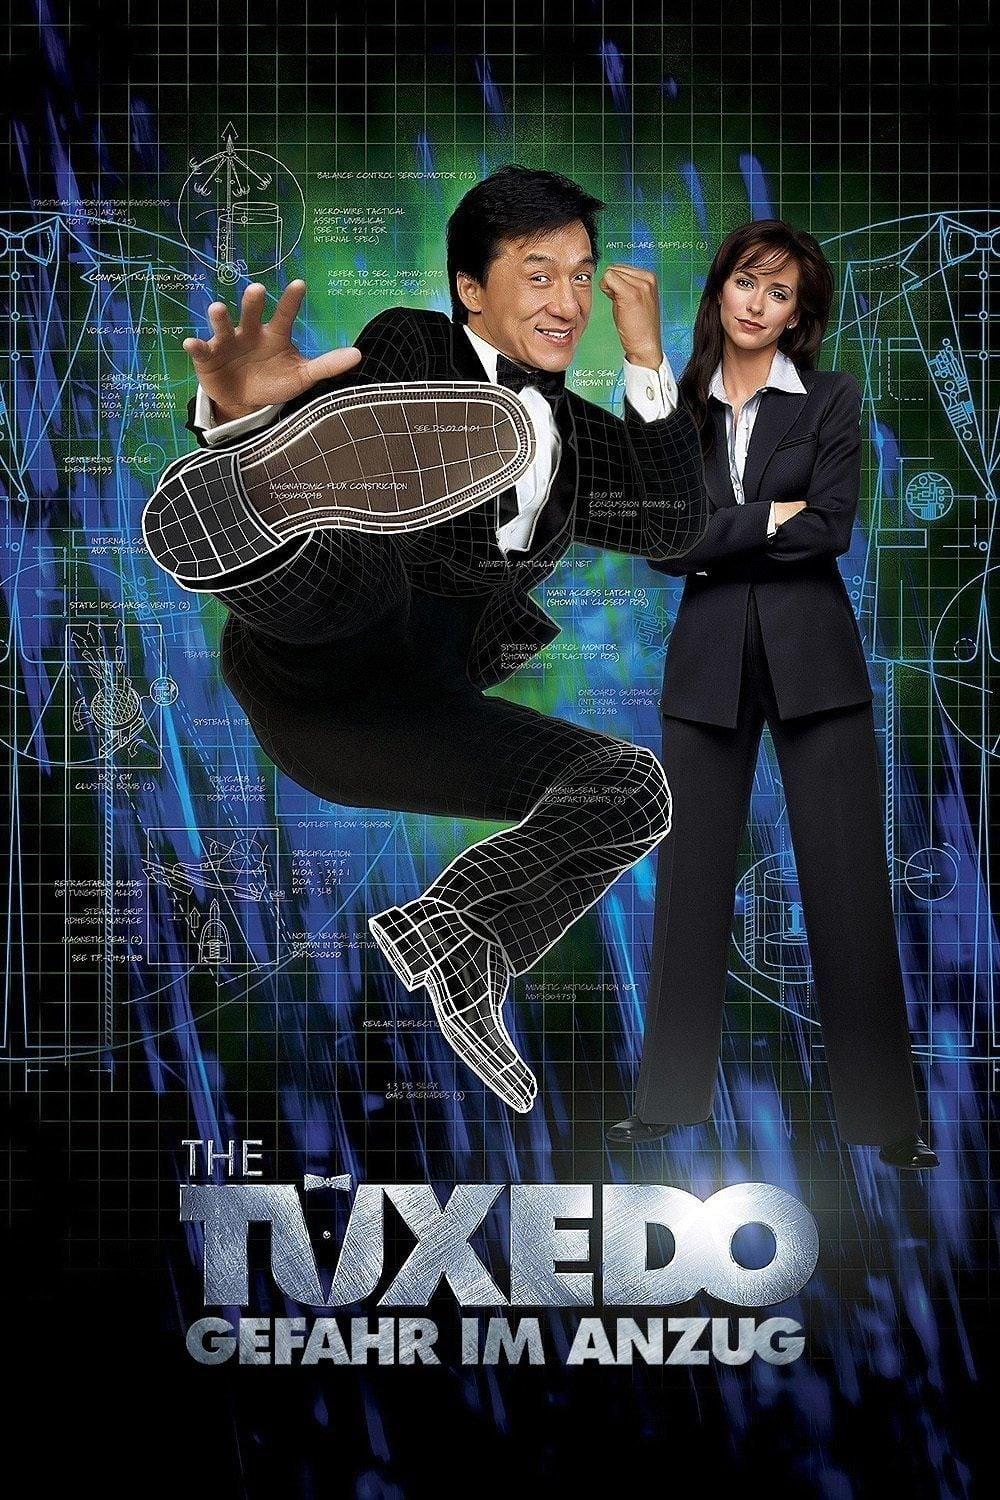 The Tuxedo - Gefahr im Anzug poster